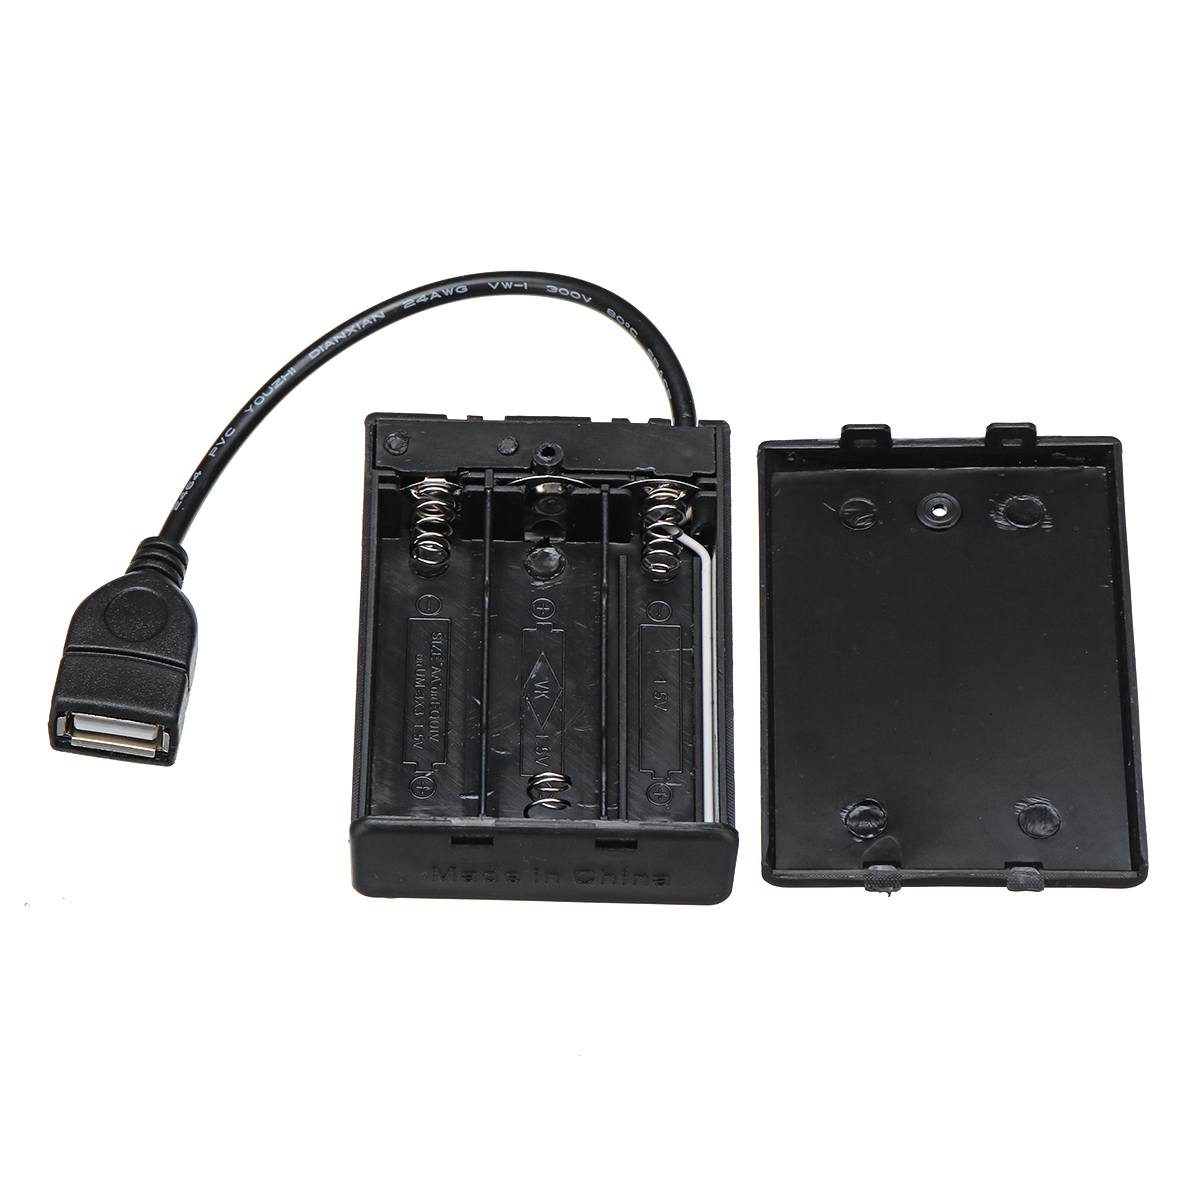 Battery Box + 7 Port USB 2.0 HUB Splitter Switch Bricks LED Lighting Kit Installing ( Battery Not Included )